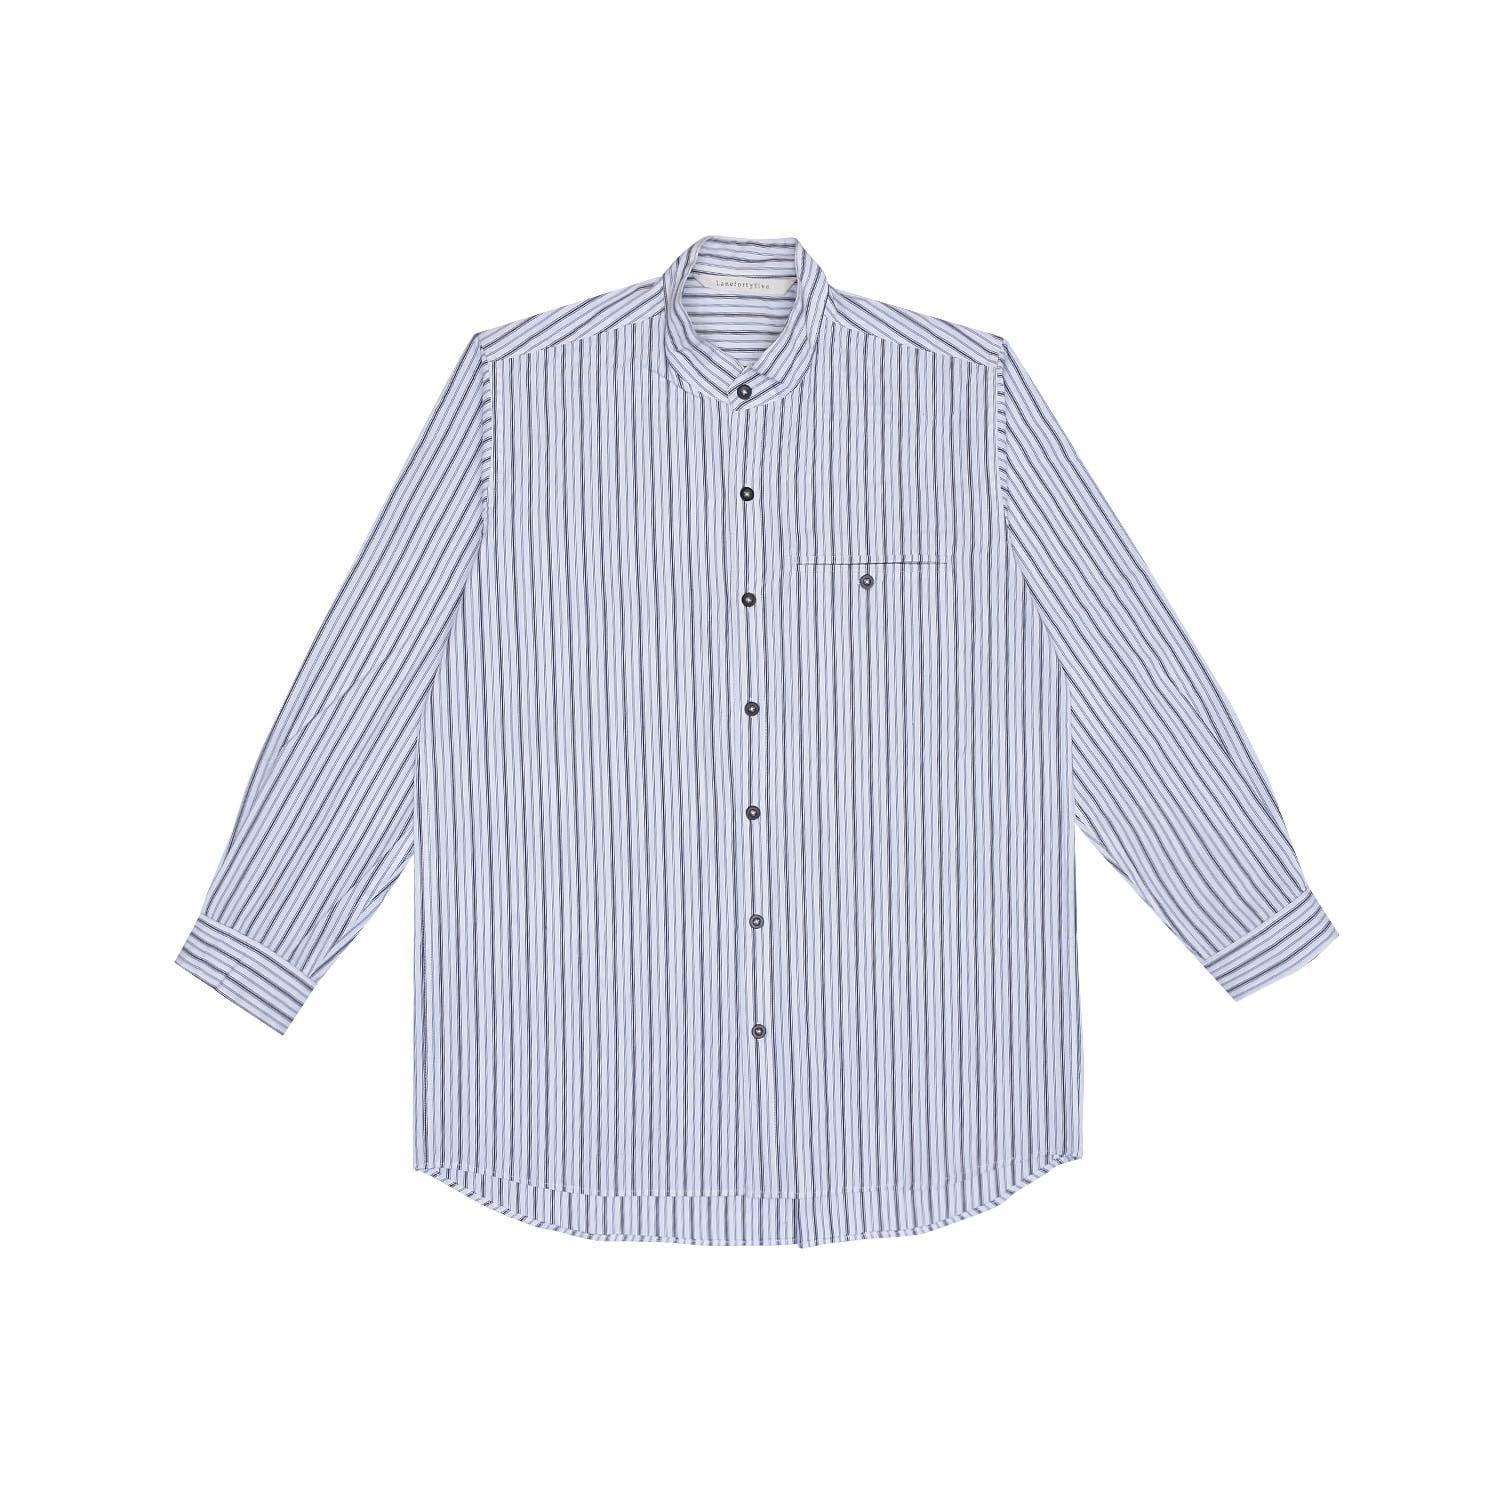 Bondurant Men's Shirt - White Small LaneFortyfive